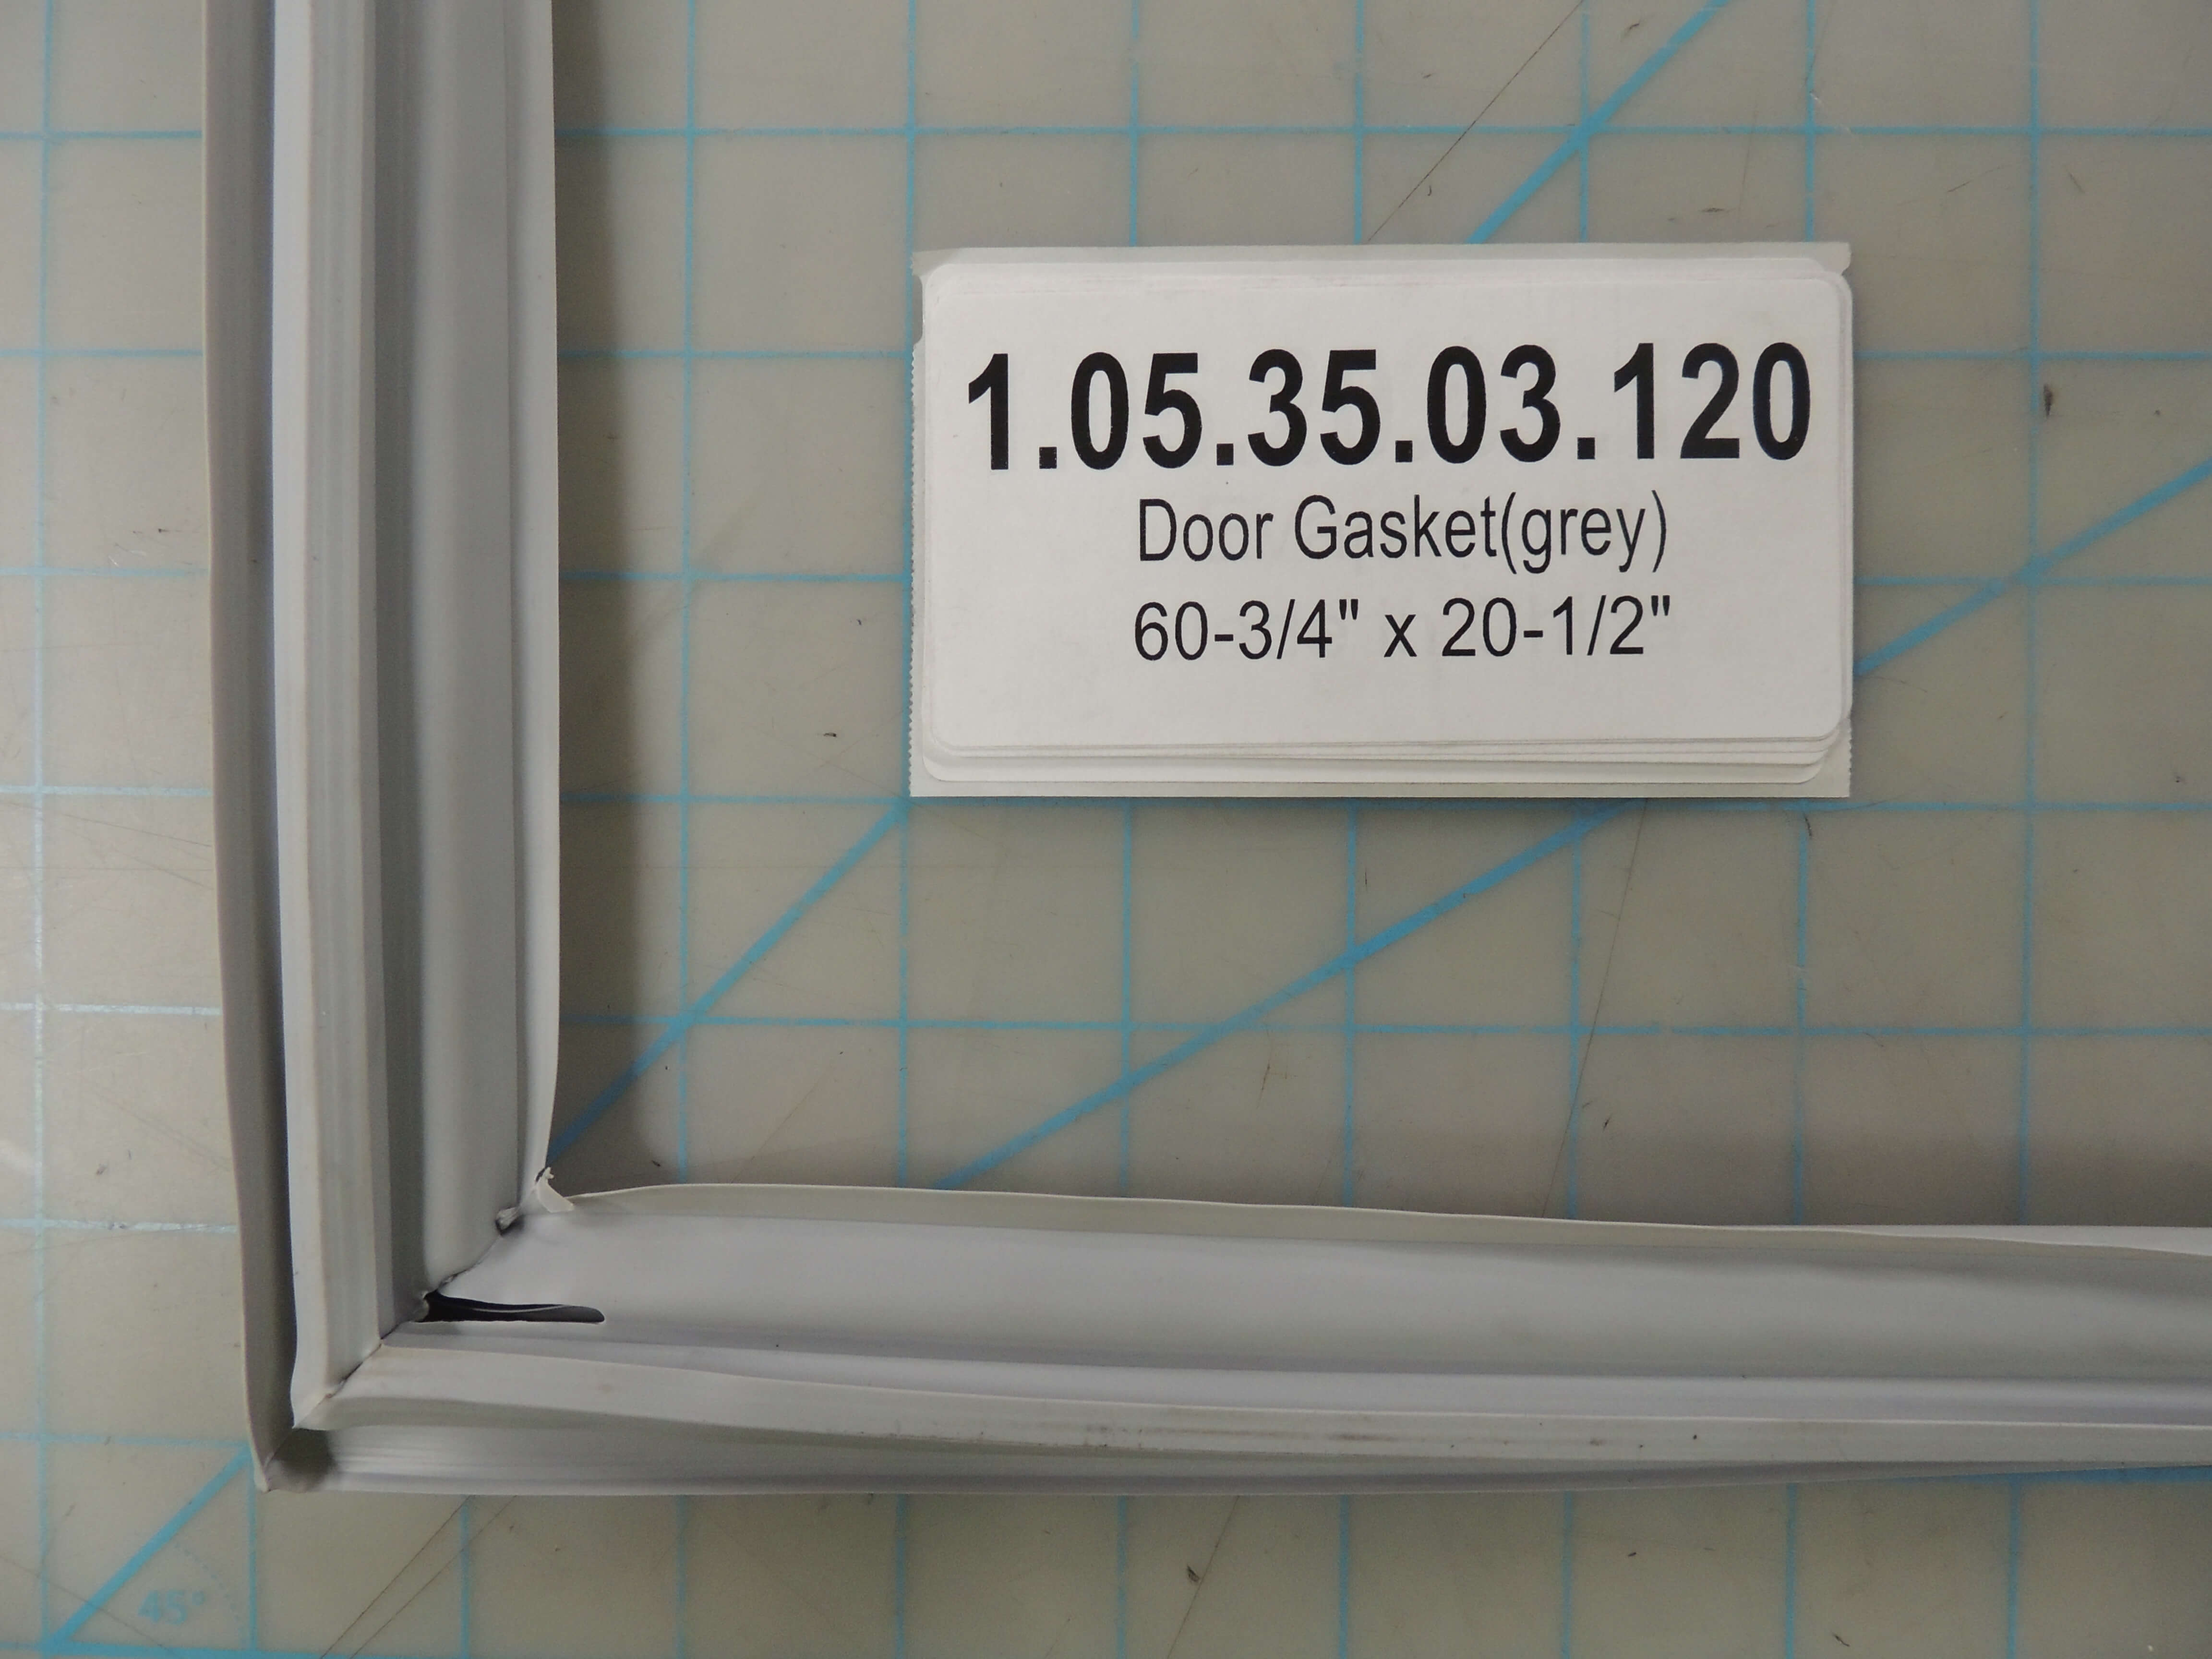 Door Gasket(grey)